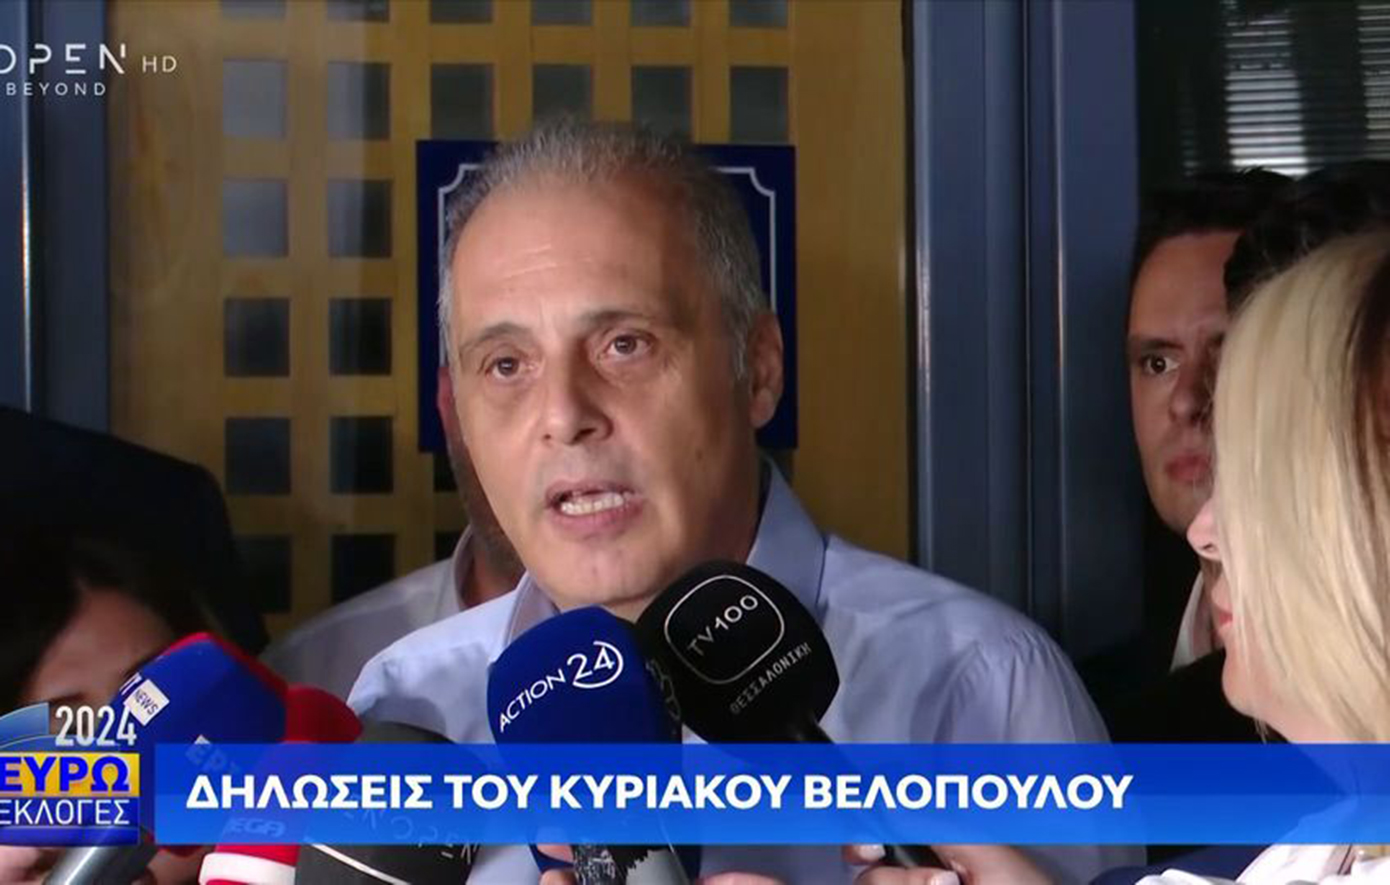 Κυριάκος Βελόπουλος: Γεννήθηκε ο πόλος της πατριωτικής διακυβέρνησης – Δεν θα σταματήσουμε μέχρι να κυβερνήσουμε